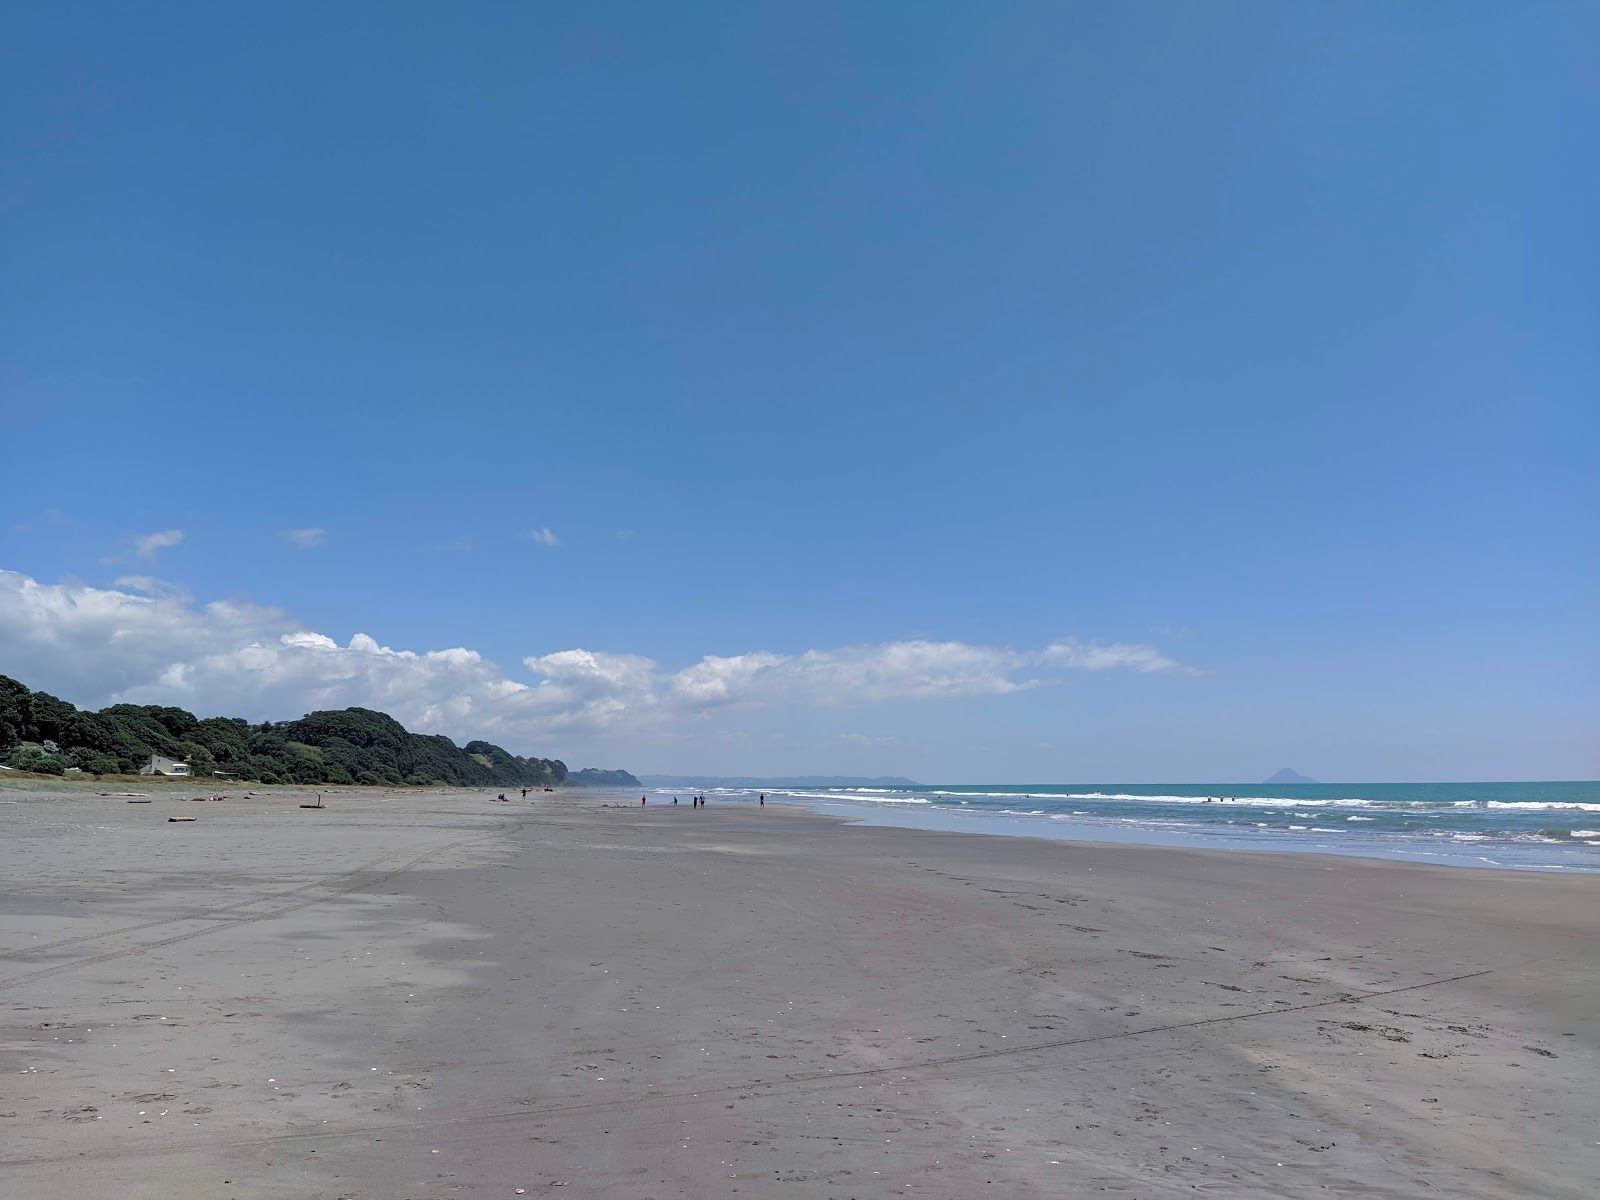 Zdjęcie Waiotahe Beach z powierzchnią szary piasek